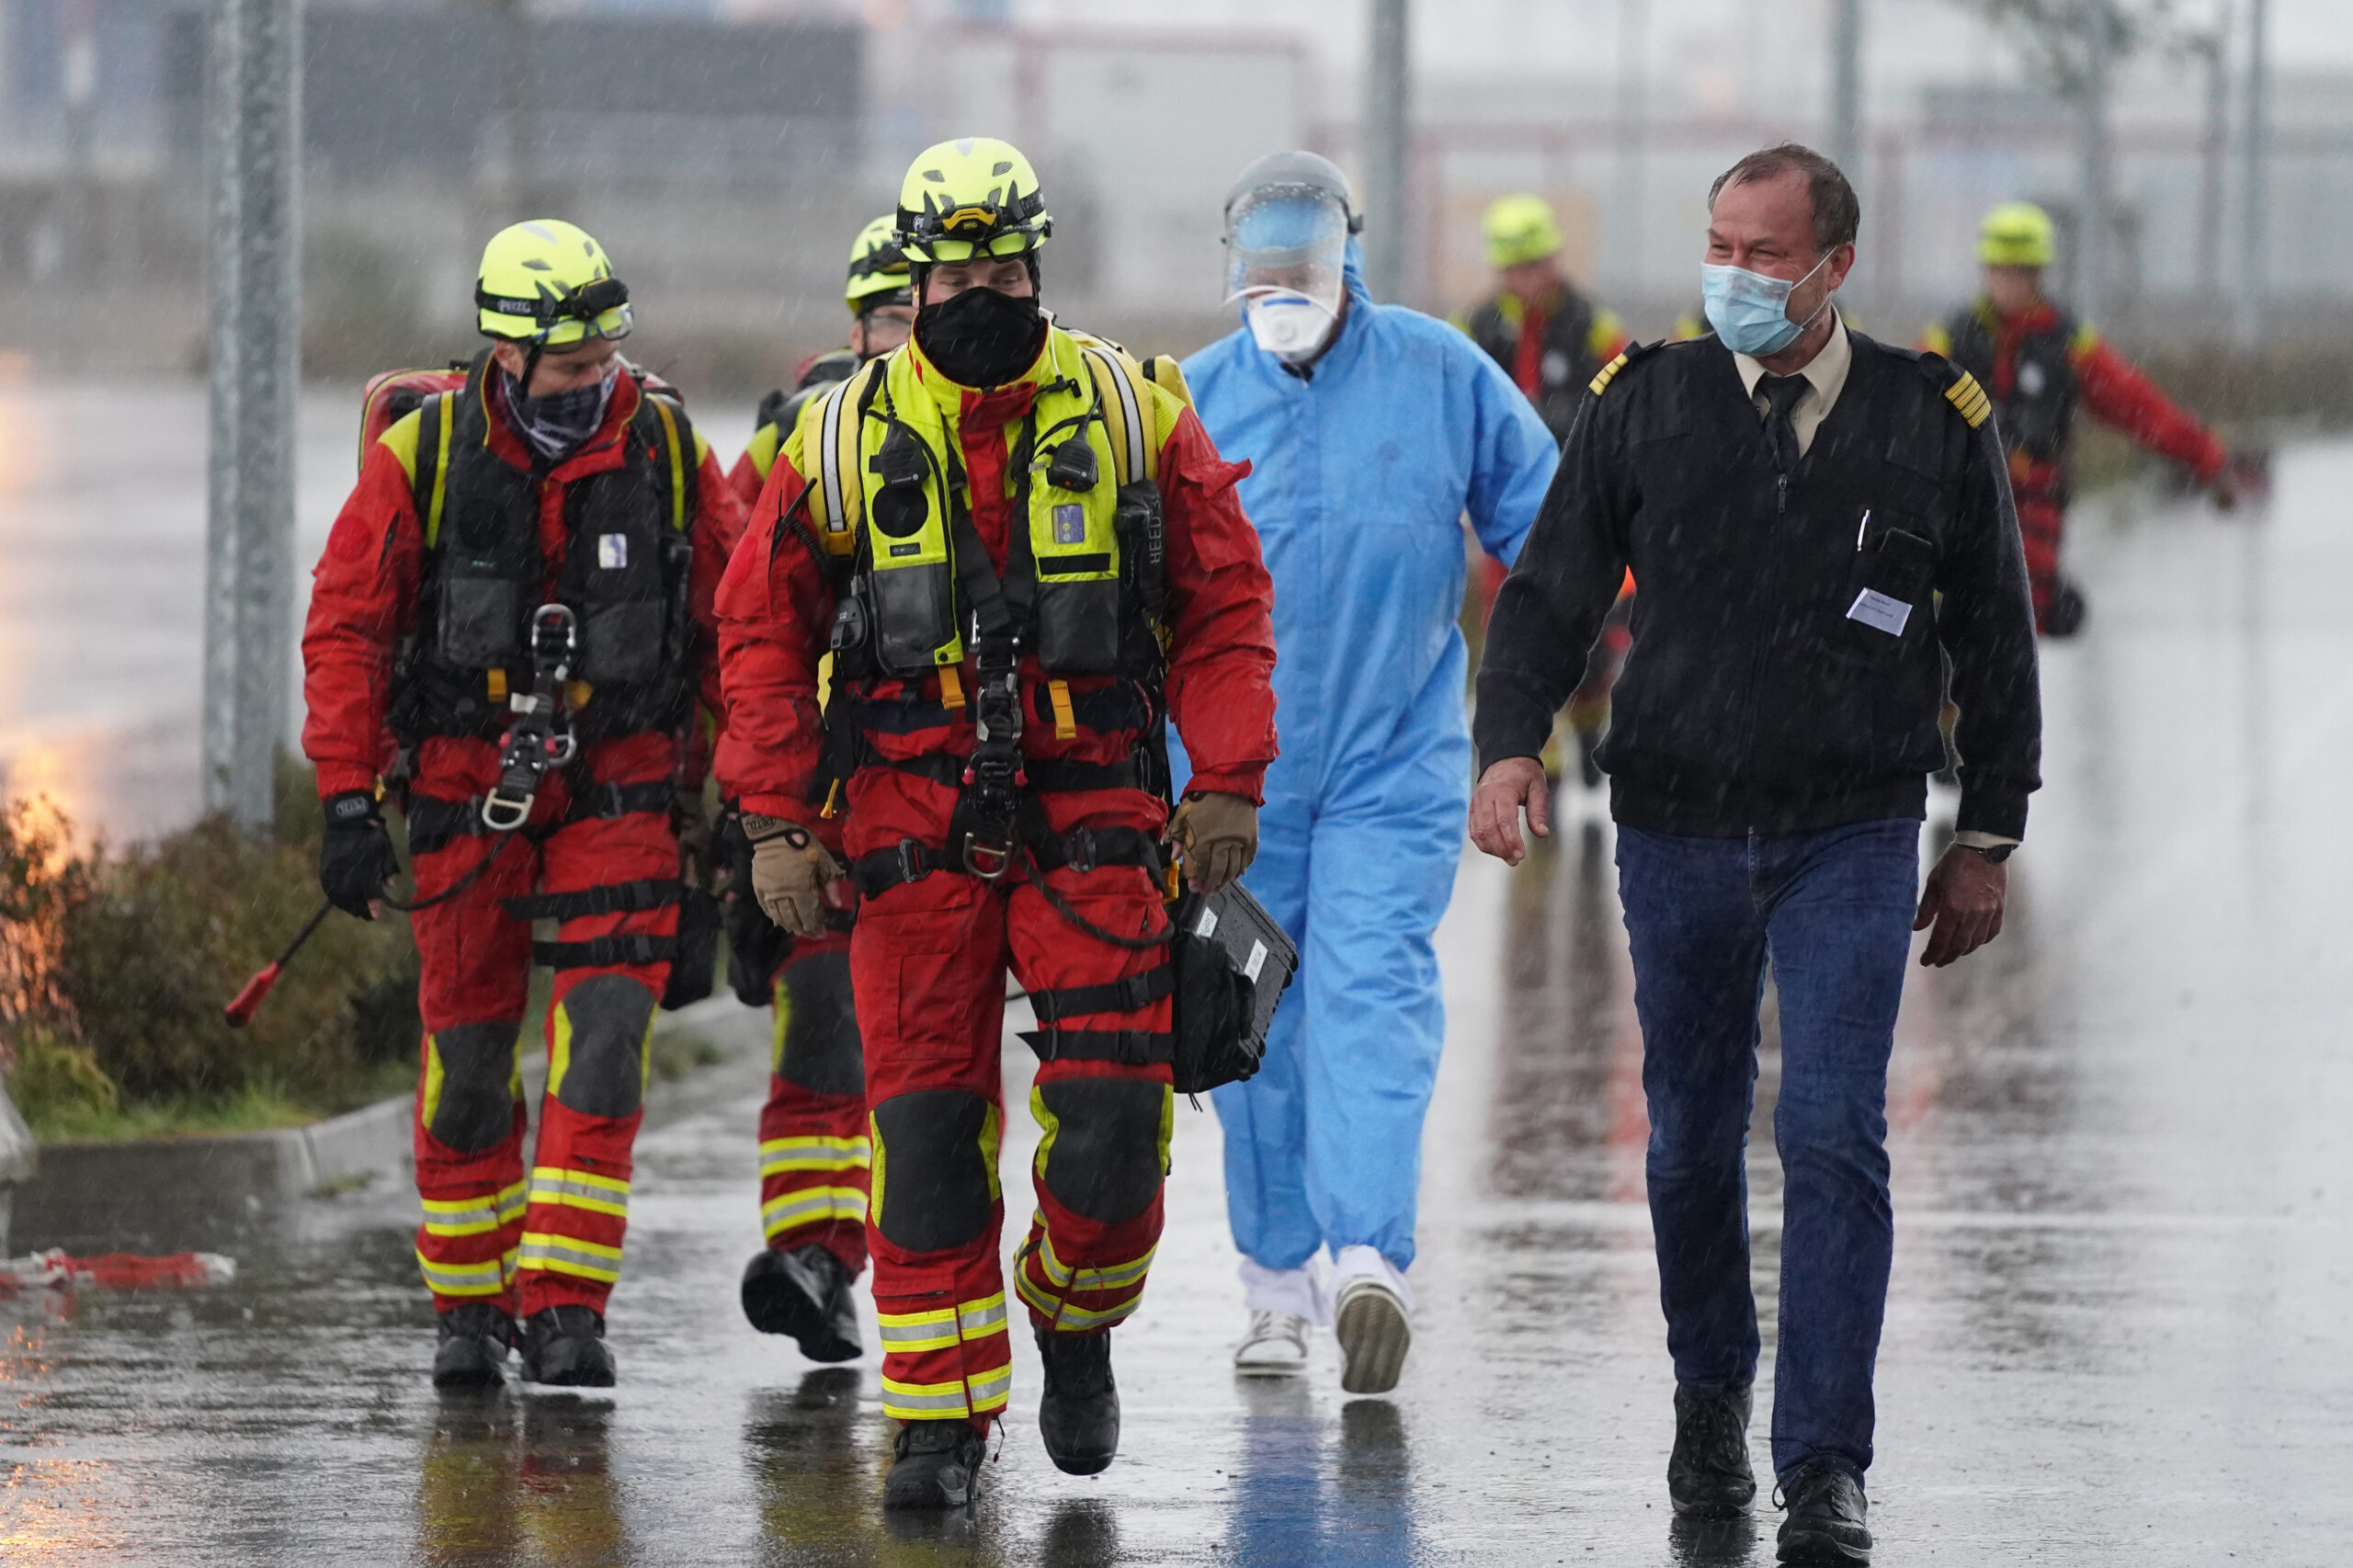 Rettungskräfte während einer Großübung zur Vorbereitung auf Notfälle im Seuchenschutz in Hamburg. (Symbolbild)